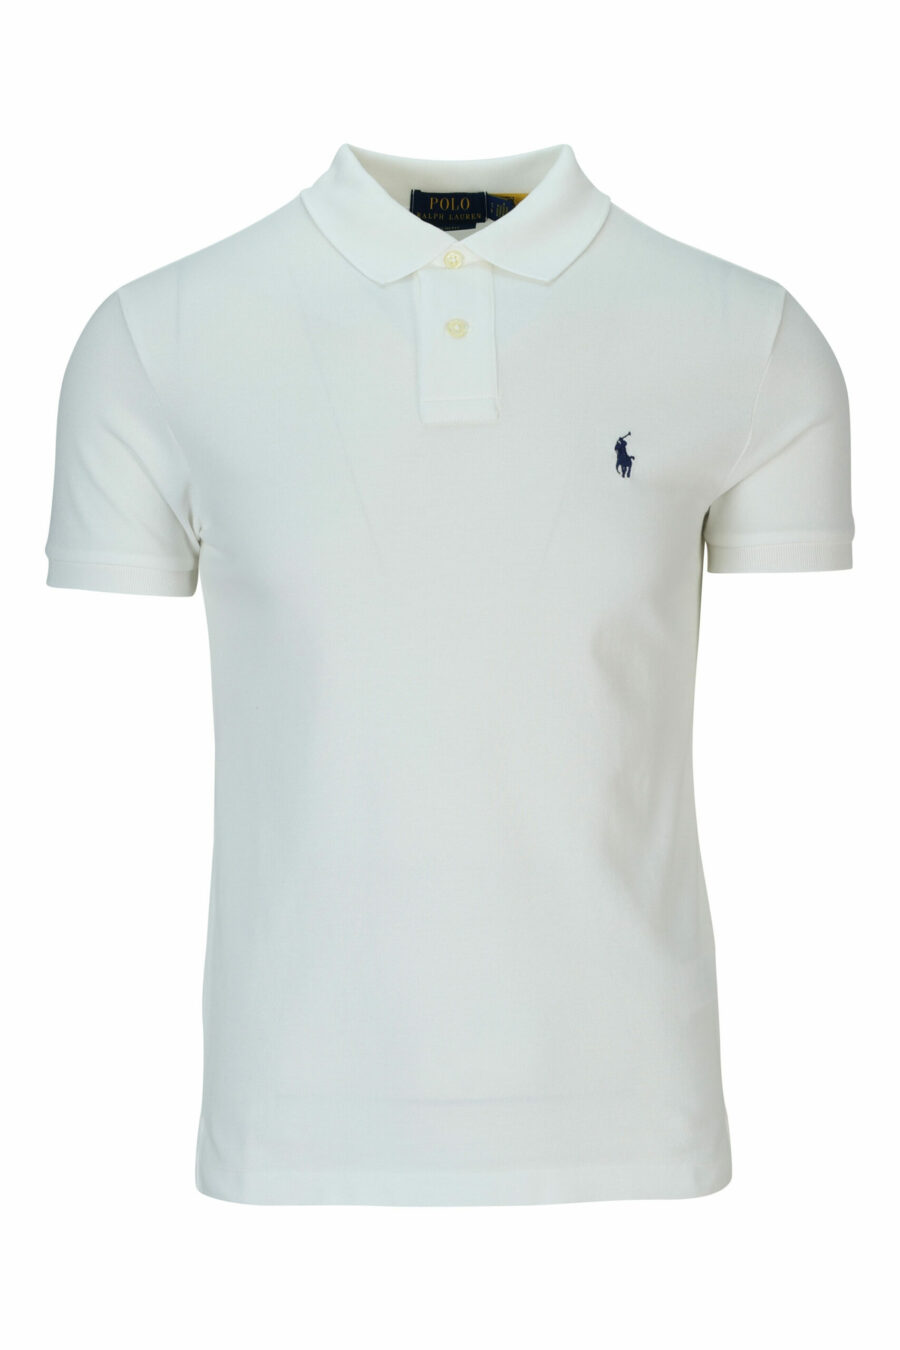 Weißes Poloshirt mit Mini-Logo "Polo" - 3603759897999 skaliert